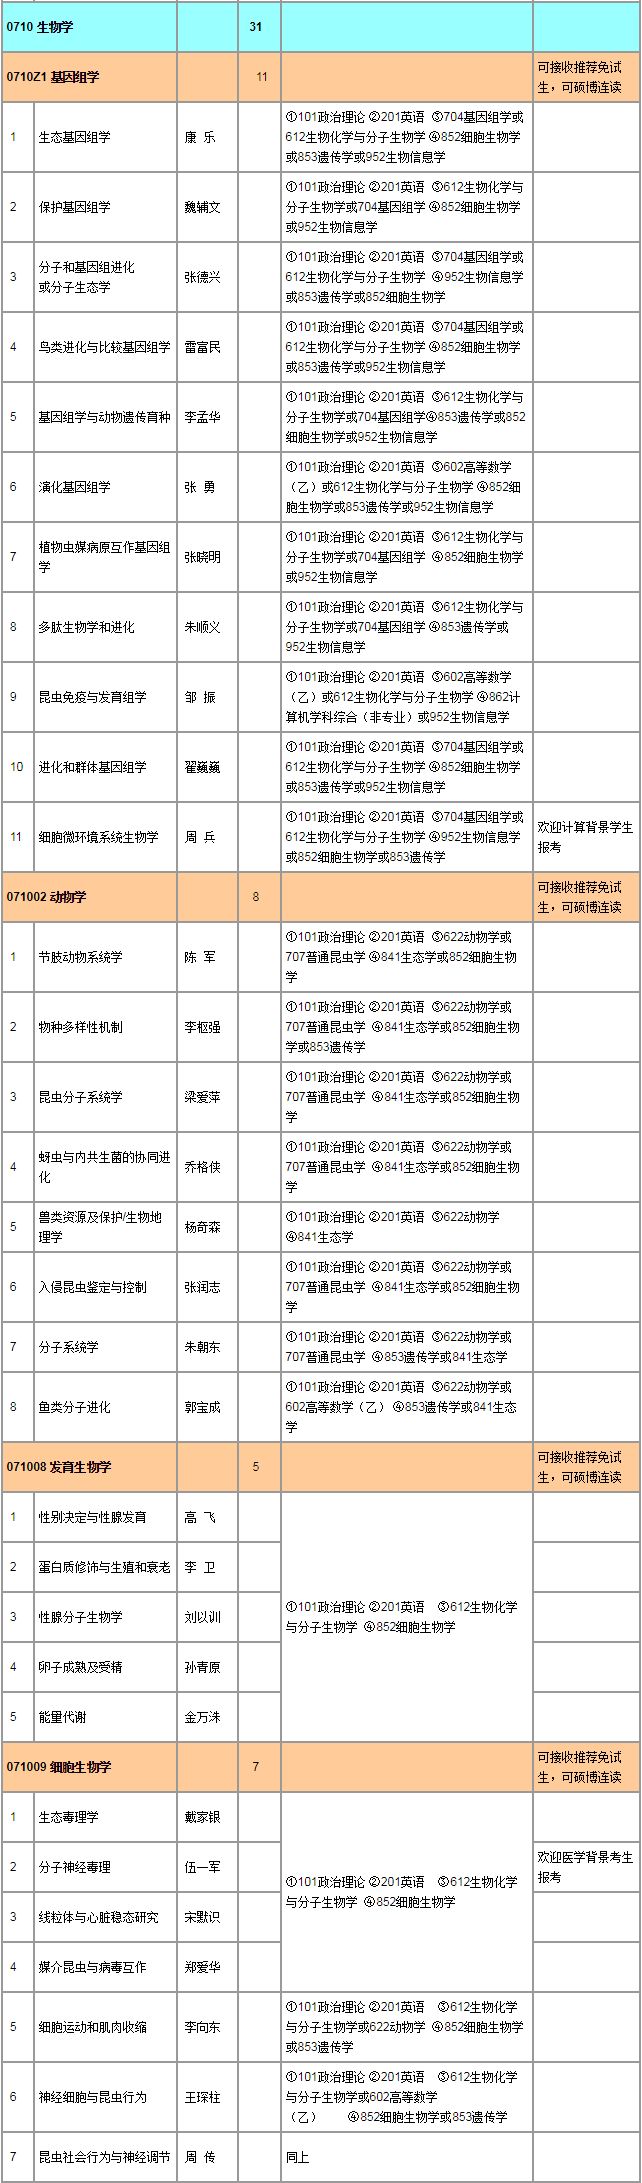 中国科学院动物研究所2019年硕士招生目录